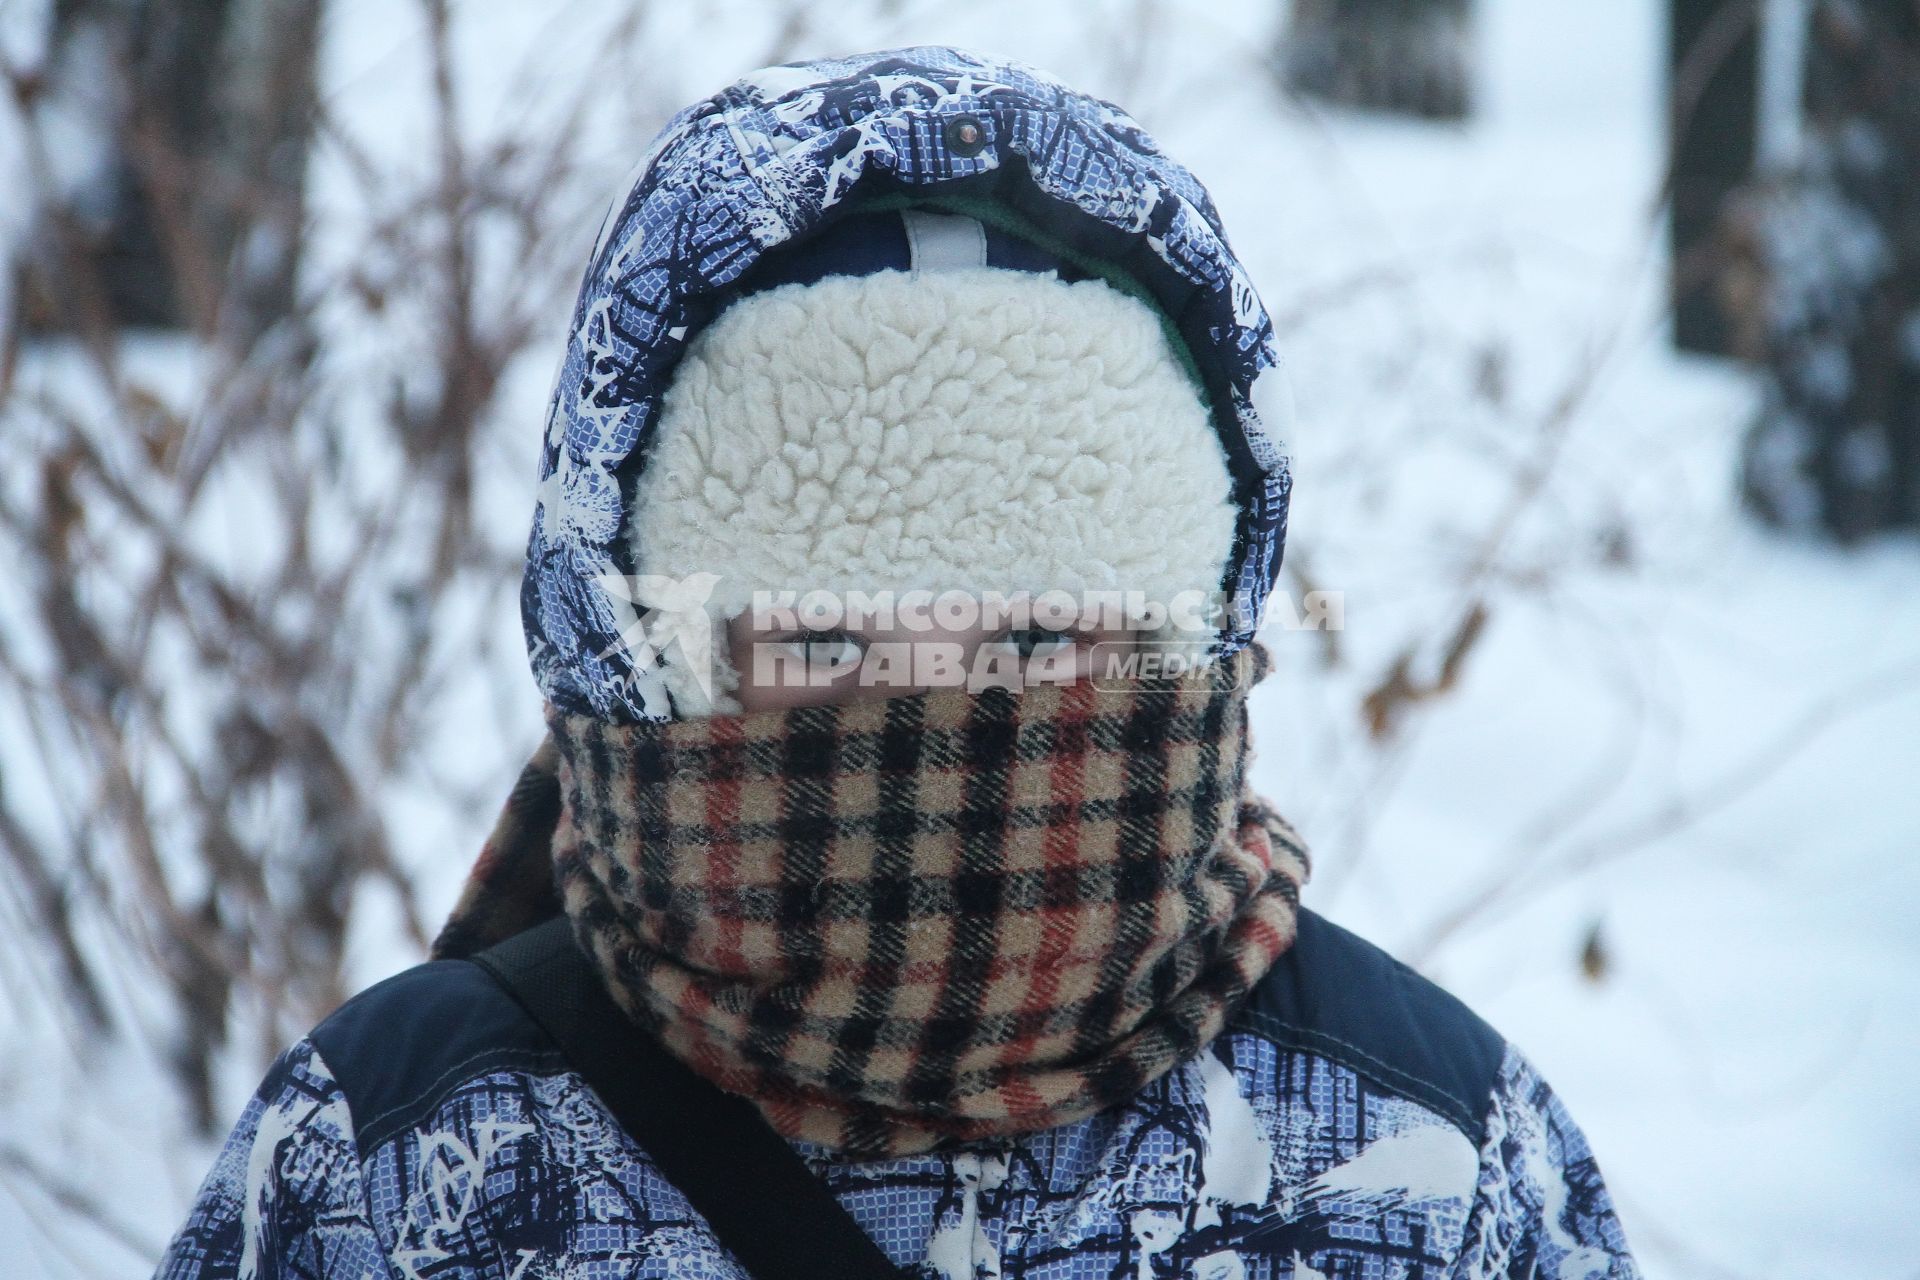 Нижний Новгород. Мальчик гуляет на улице в мороз.